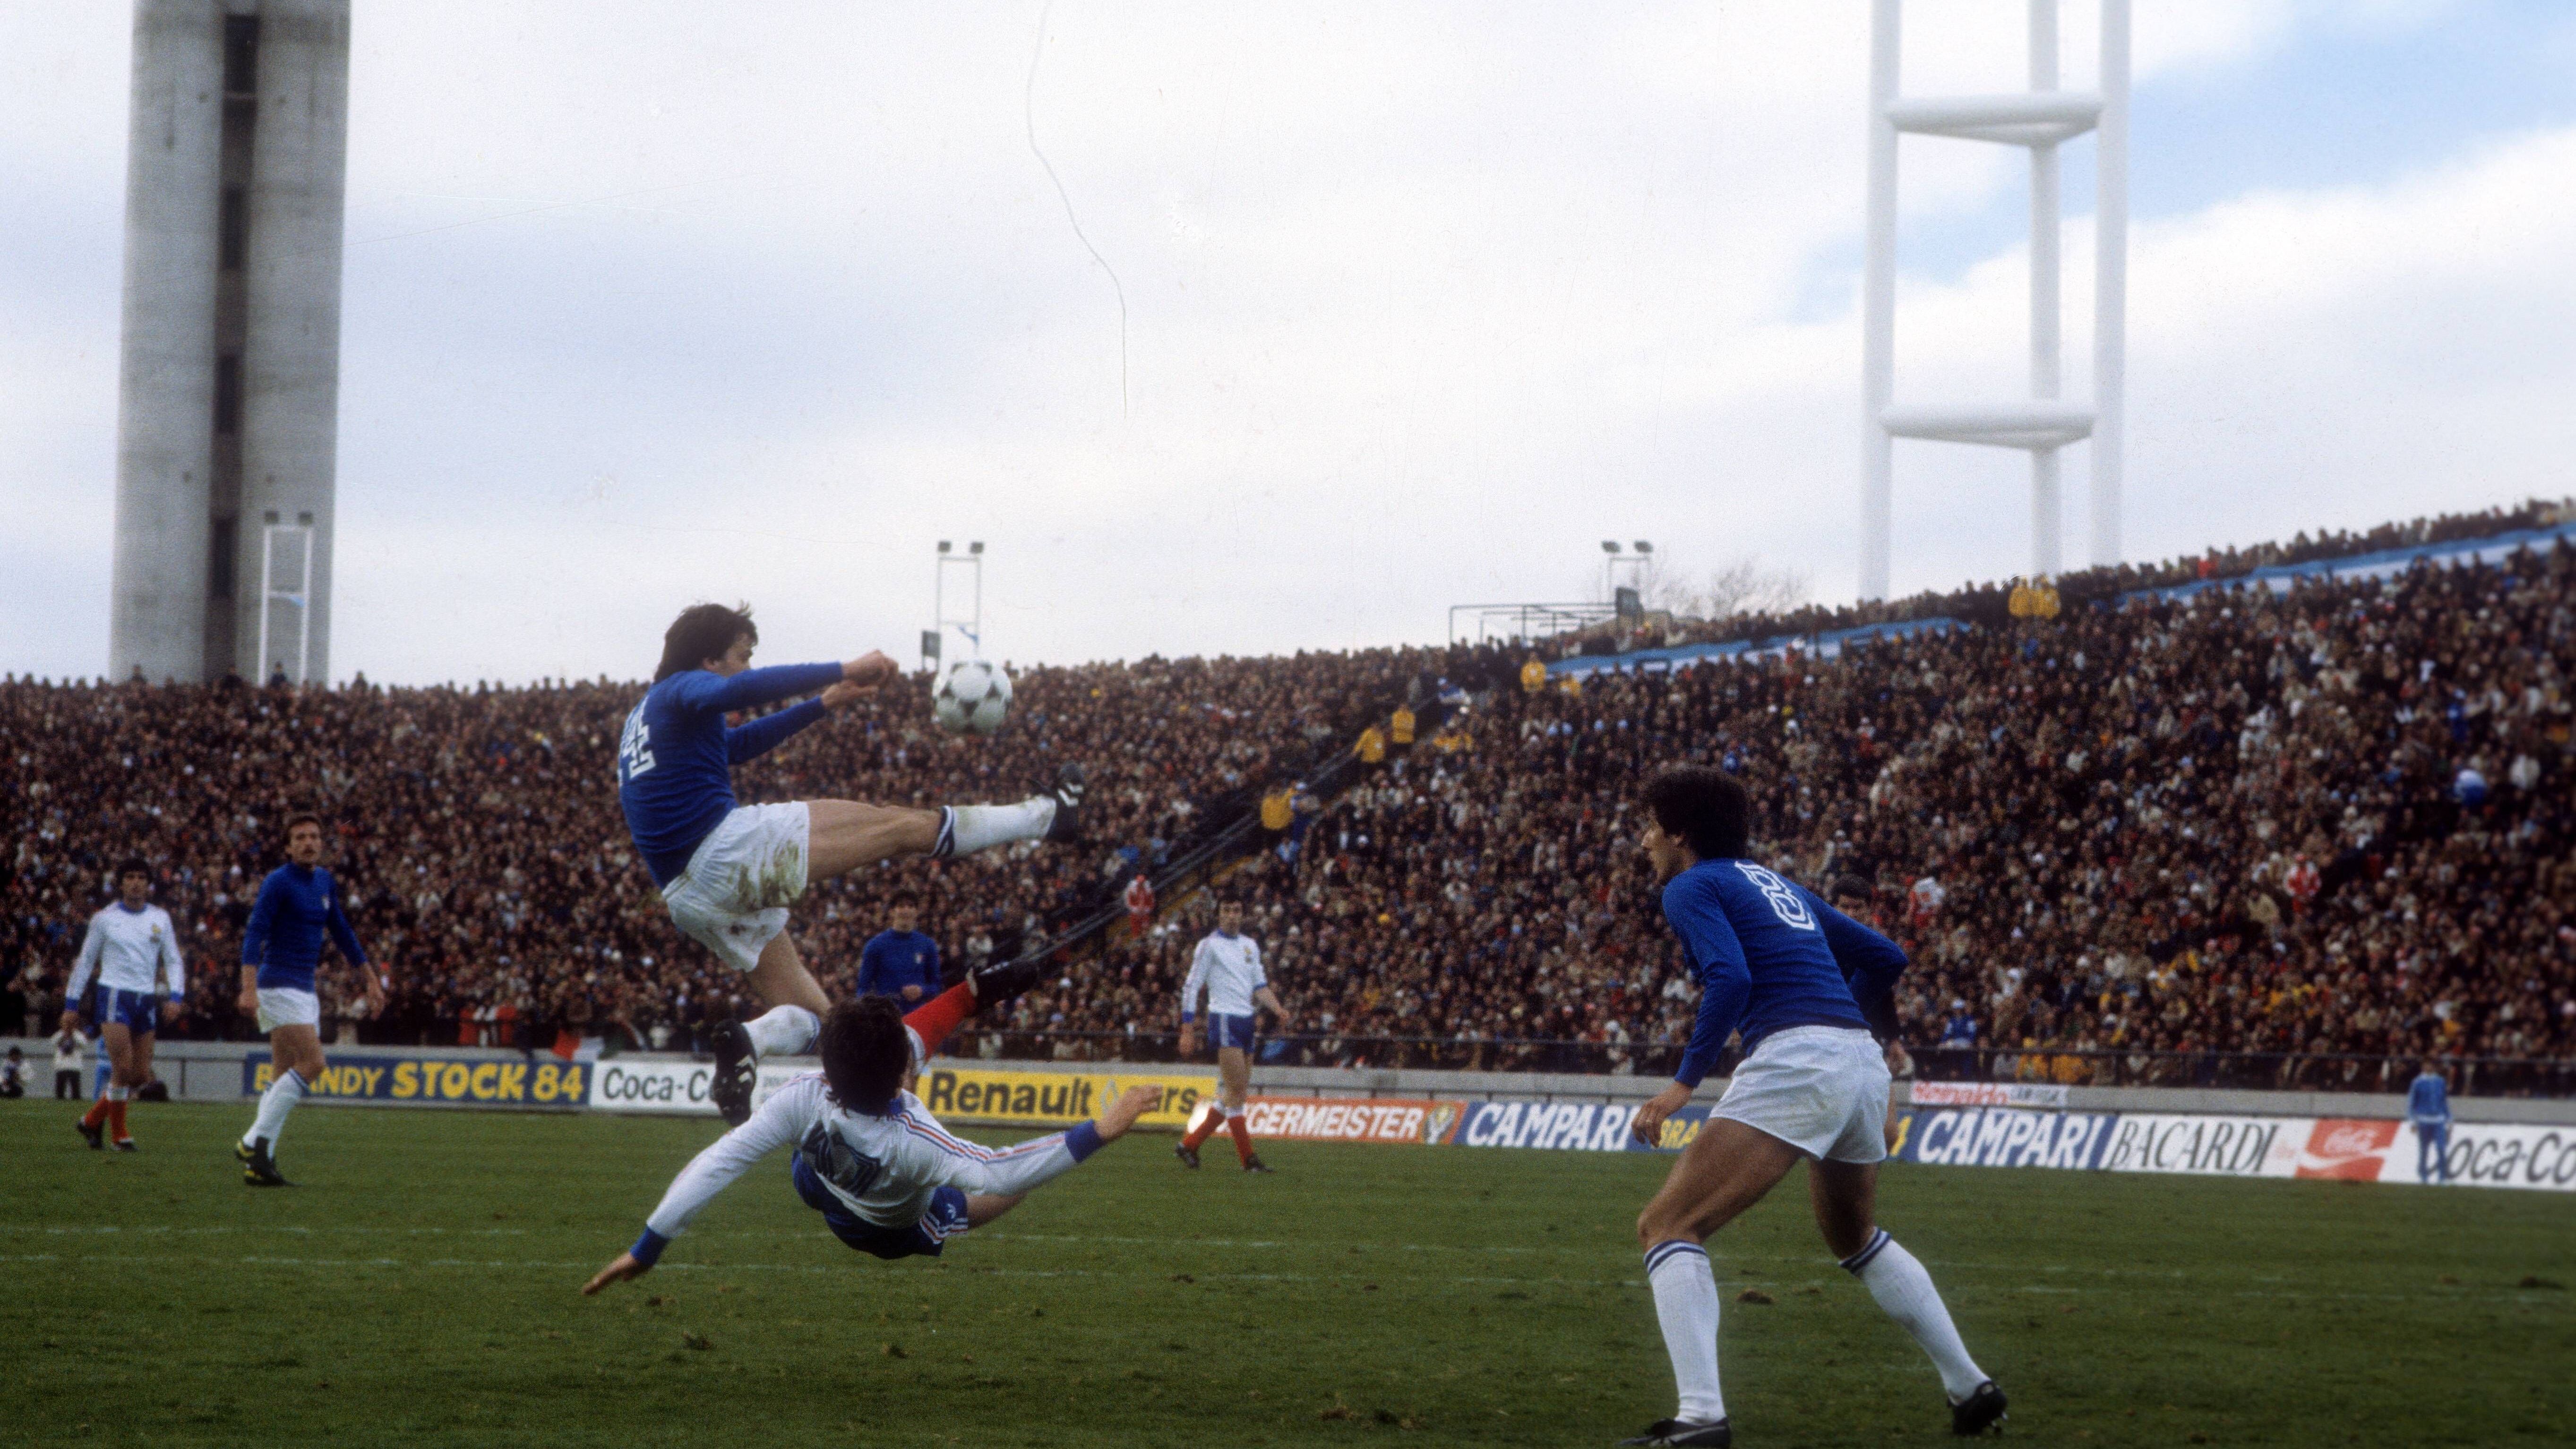 <strong>Platz 16: Bernard Lacombe (Frankreich) - 31 Sekunden</strong><br>Turnier: WM 1978 in Argentinien<br>Spiel: Gruppenspiel gegen Italien 1:2<br>Besonderes: Lacombe traf nach einer knappen halben Minute per Kopf